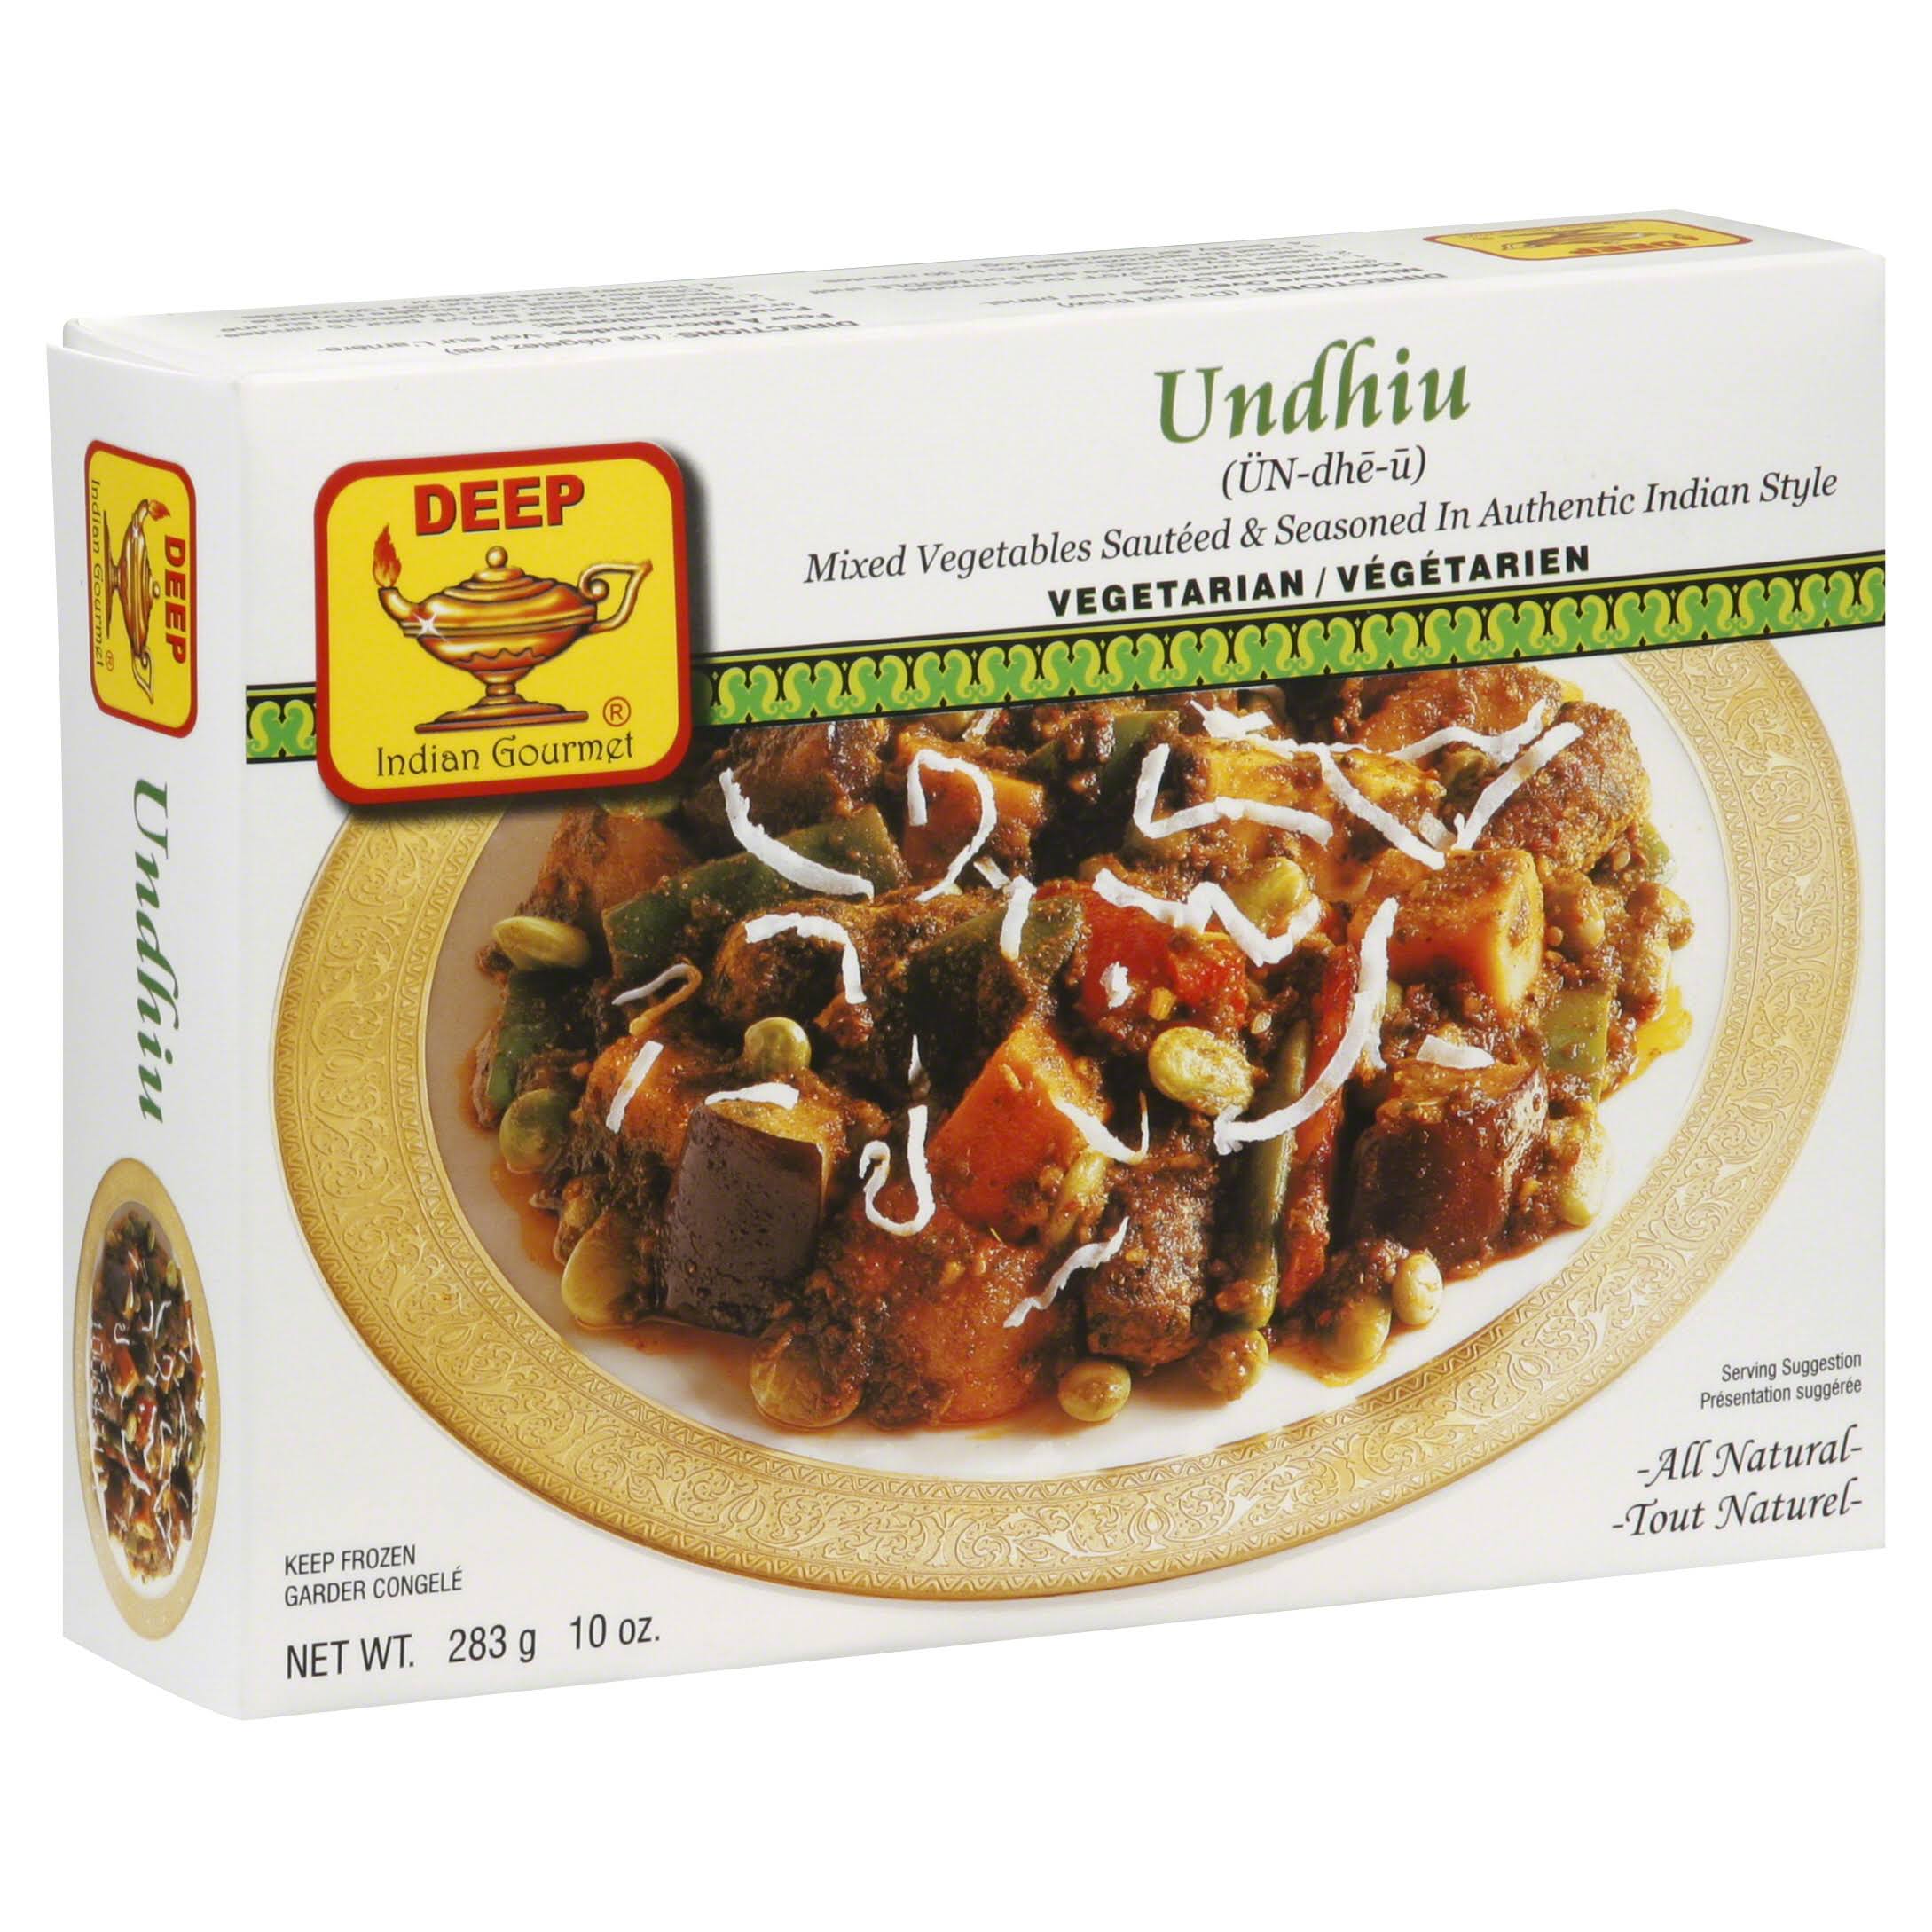 Deep Indian Gourmet Indian Gourmet Undhiu - 10 oz